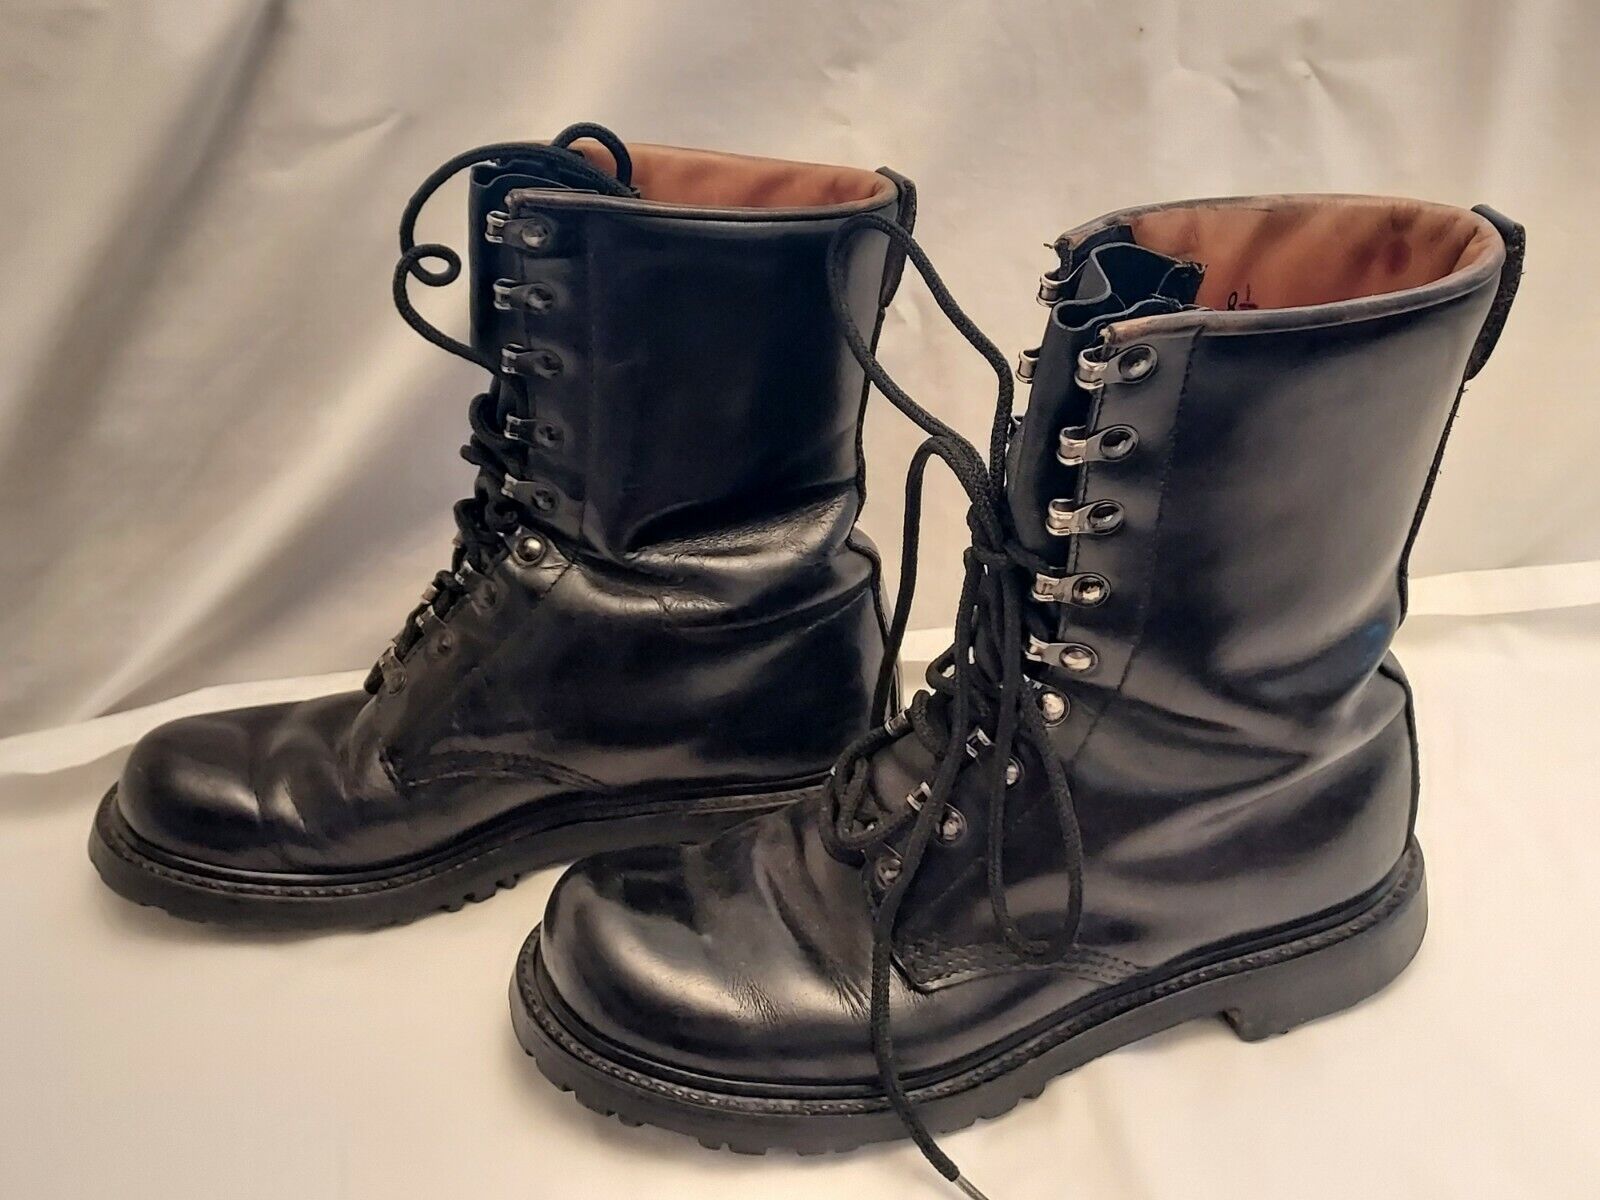 Vintage Combat Military Echt Leder Boots Size 8 1/2